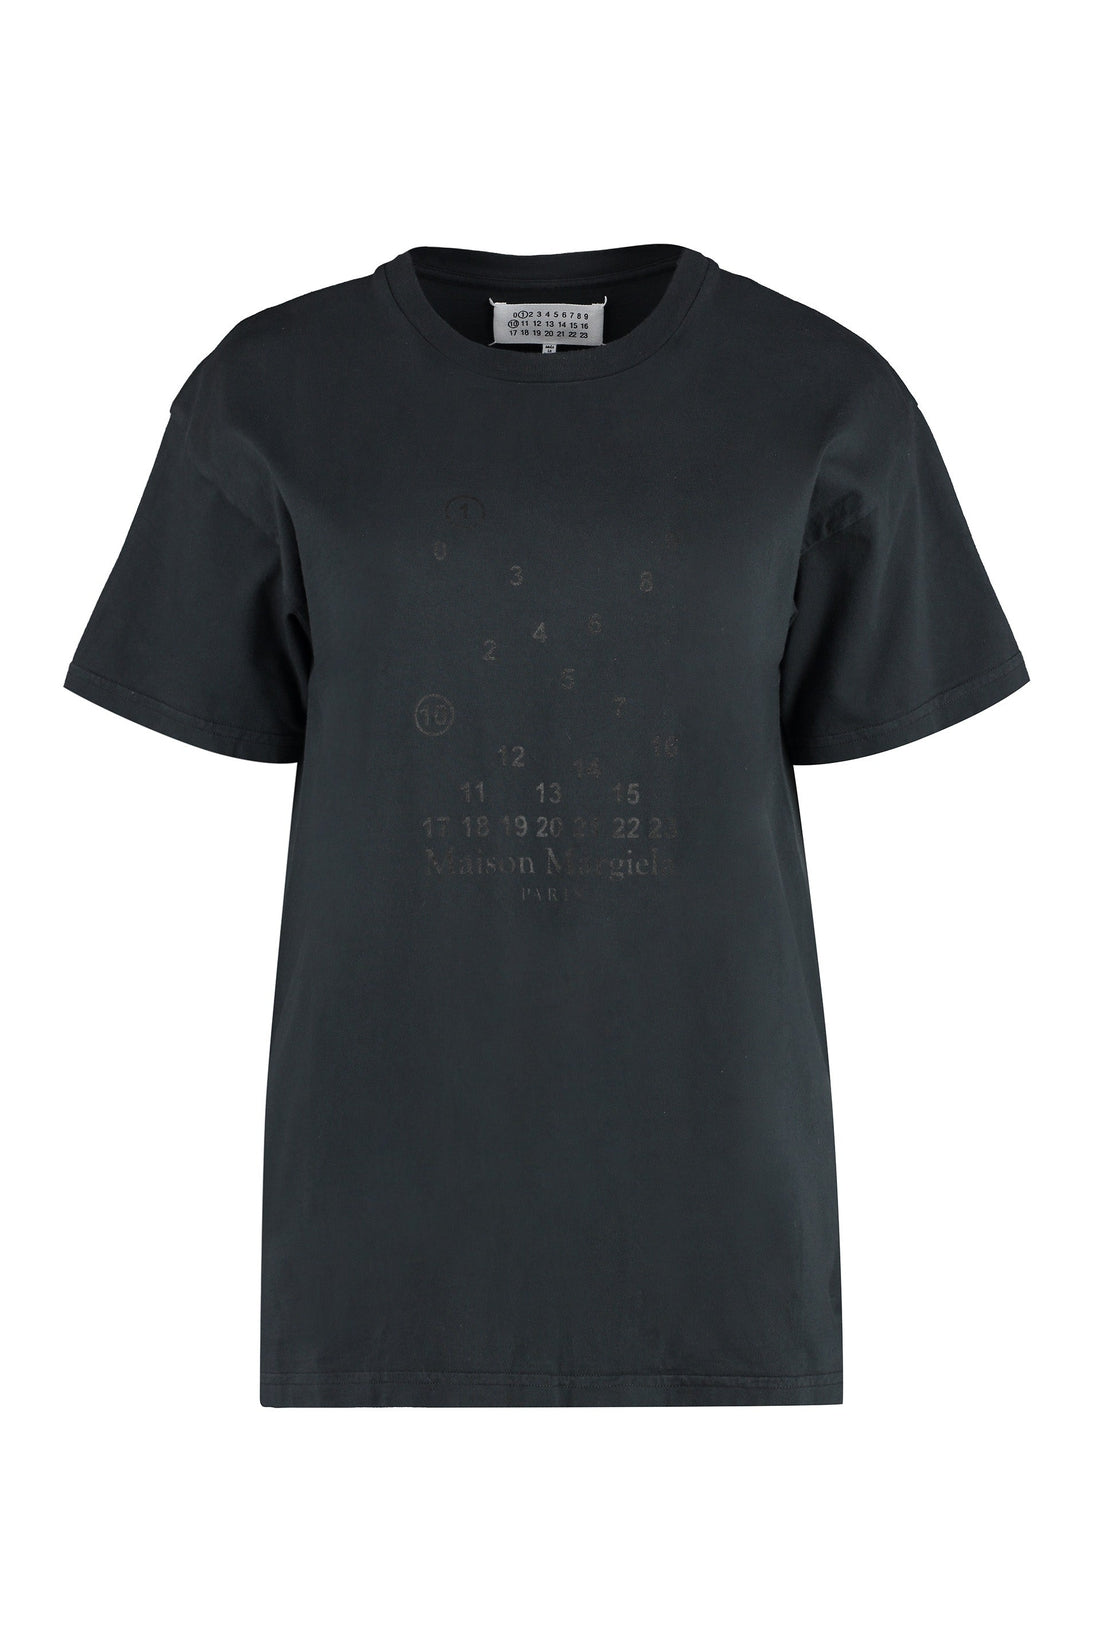 Maison Margiela-OUTLET-SALE-Cotton crew-neck T-shirt-ARCHIVIST